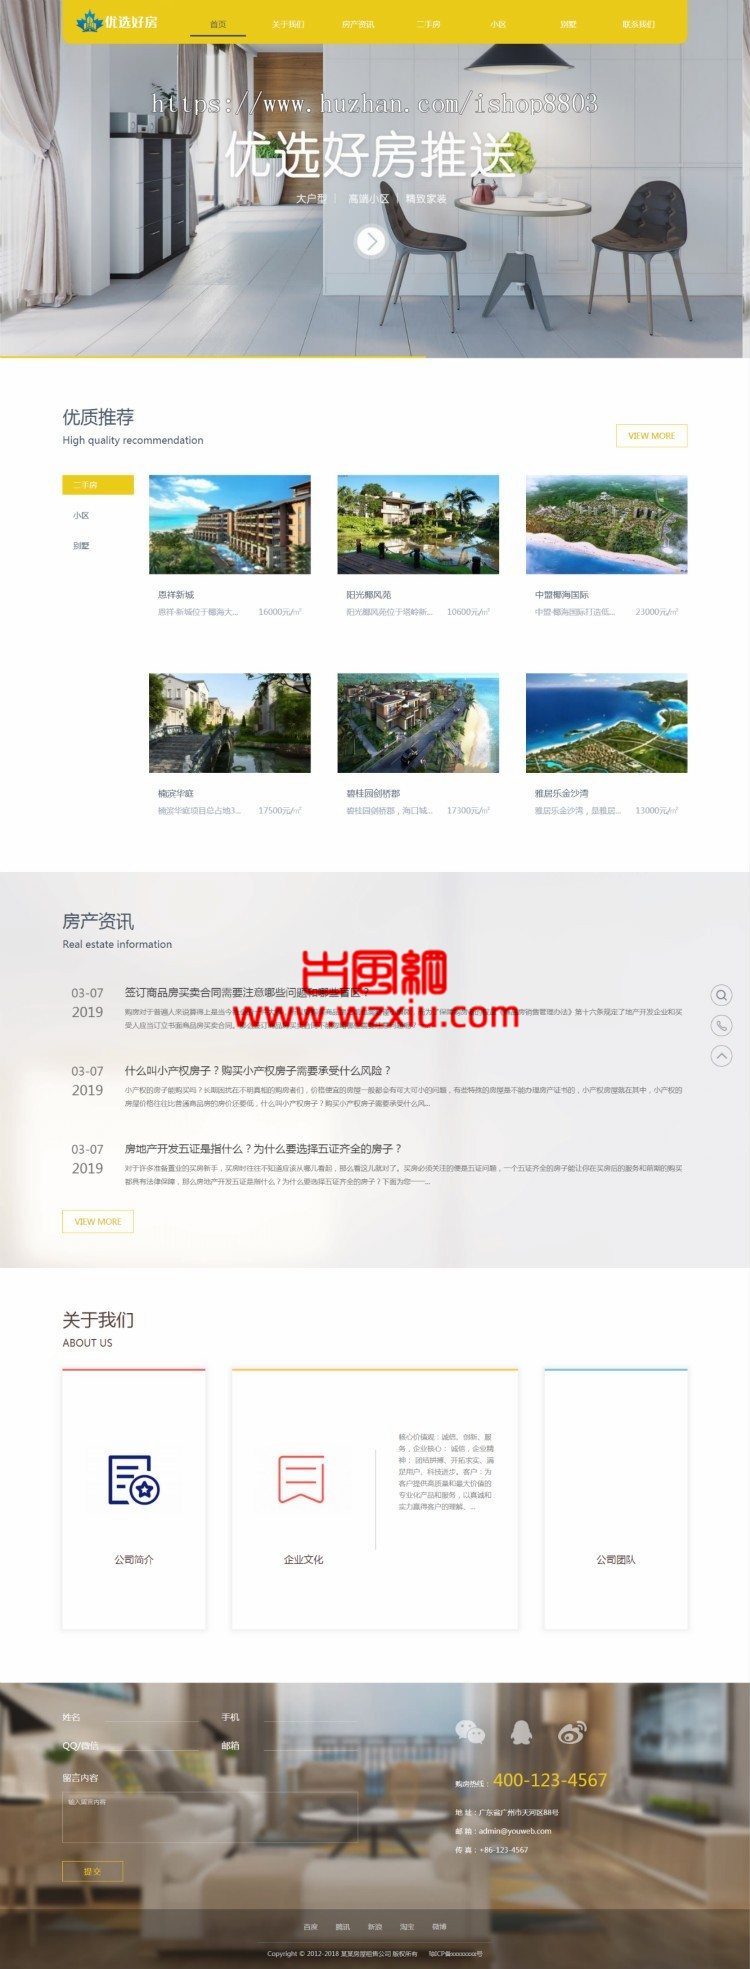 【PHP】易优房屋租售置业公司网站管理系统_v6.5